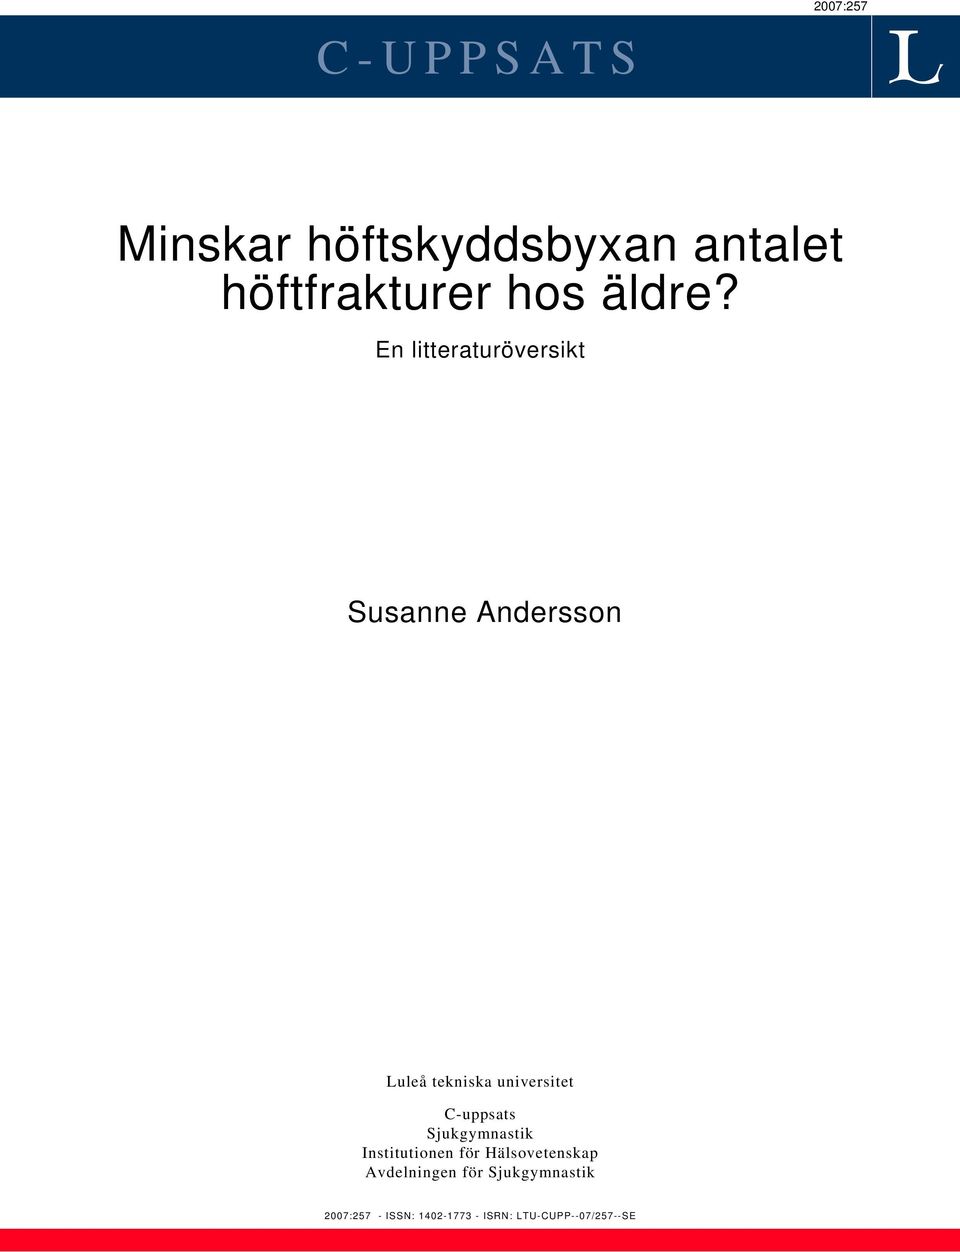 En litteraturöversikt Susanne Andersson Luleå tekniska universitet